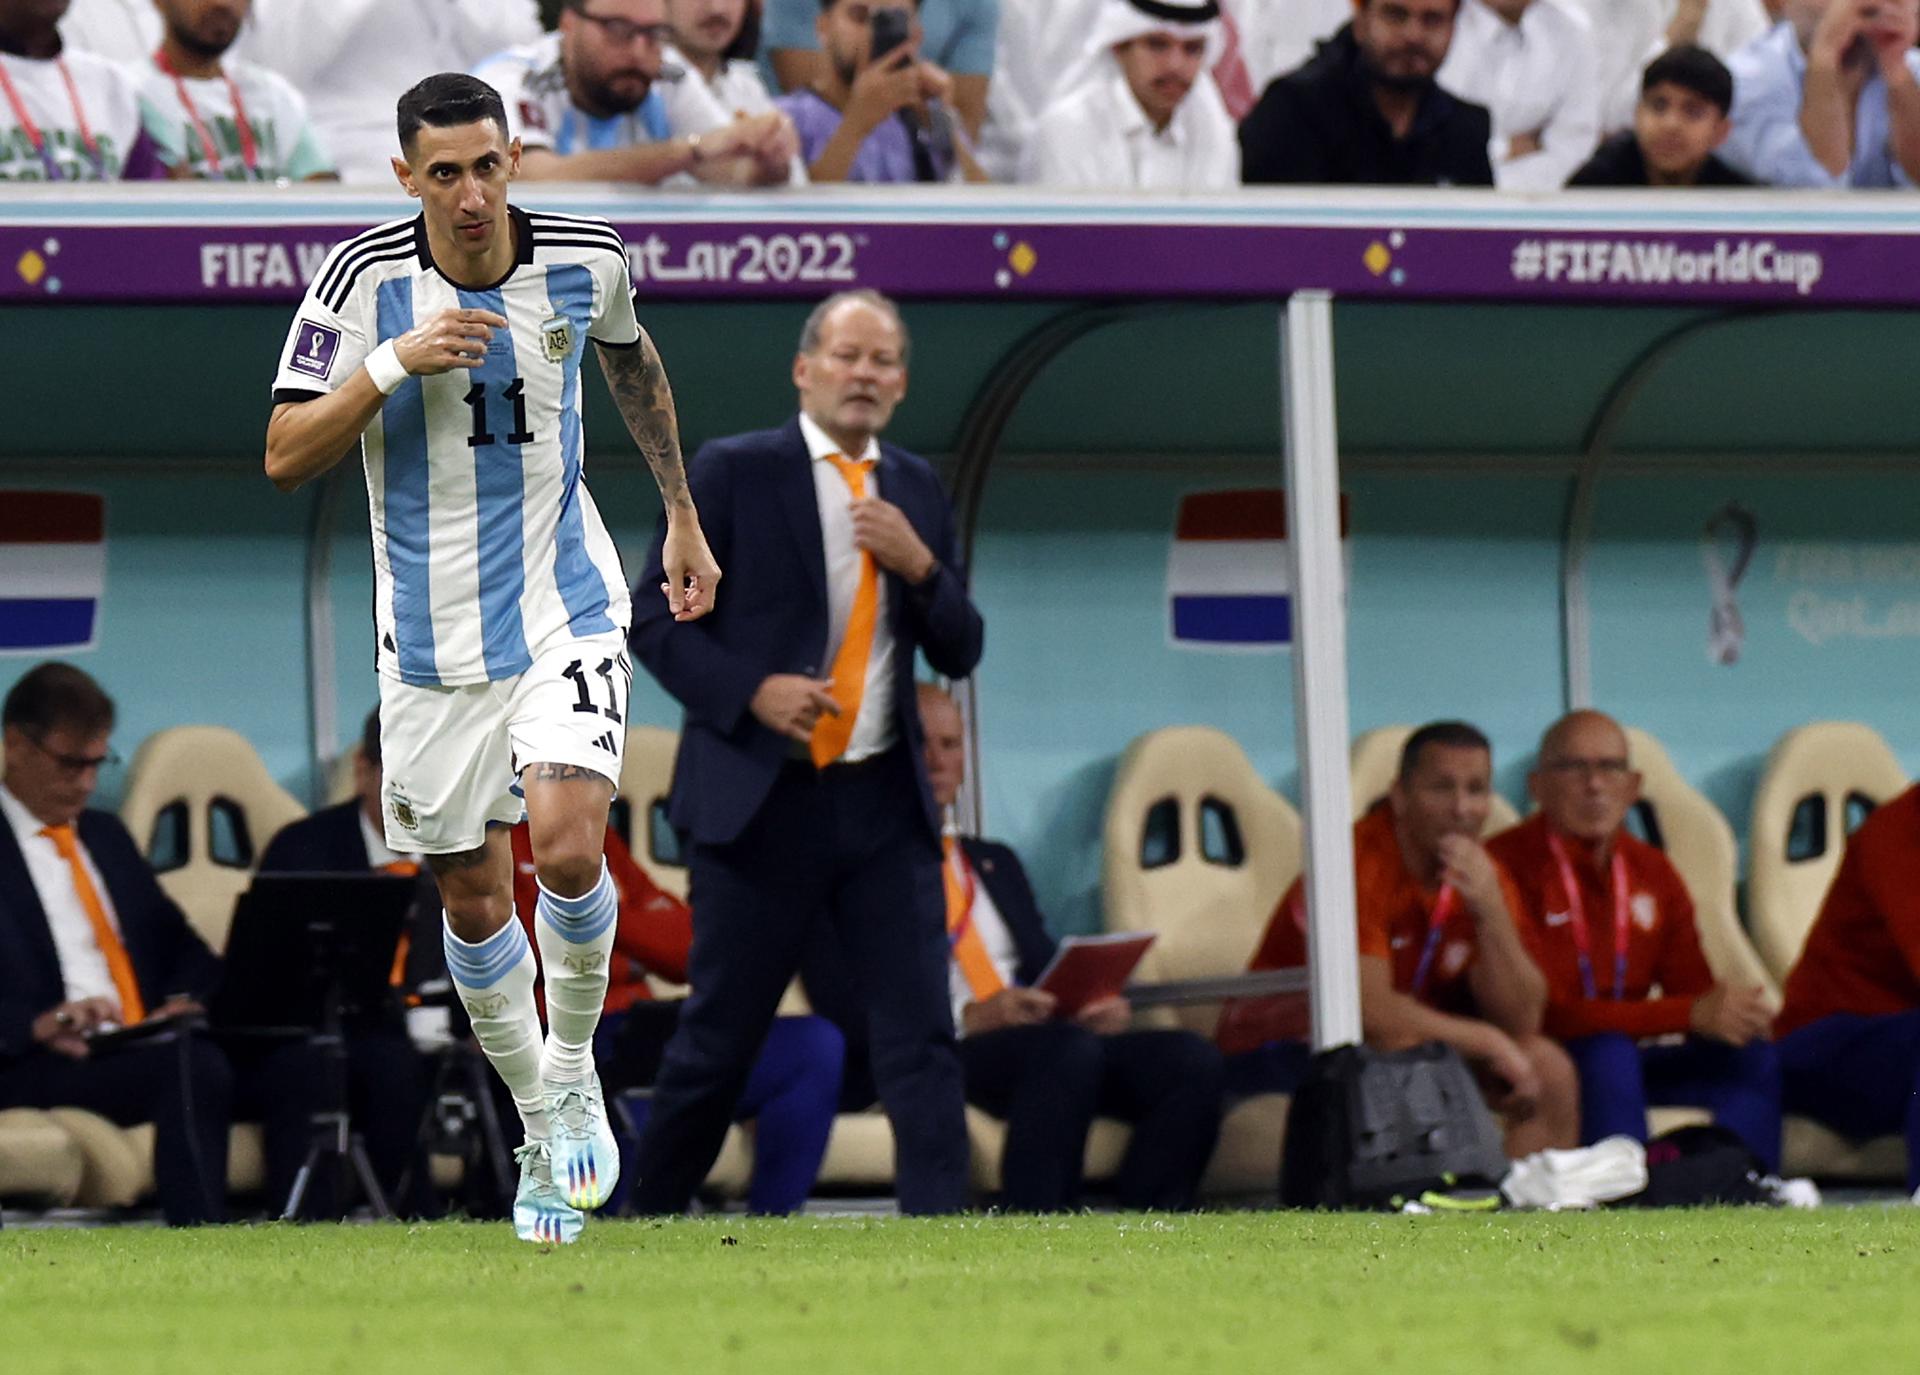 ESCALAÇÃO DA SELEÇÃO ARGENTINA NA COPA DO MUNDO 2022: confira a escalação  da Argentina para a Copa do Mundo 2022